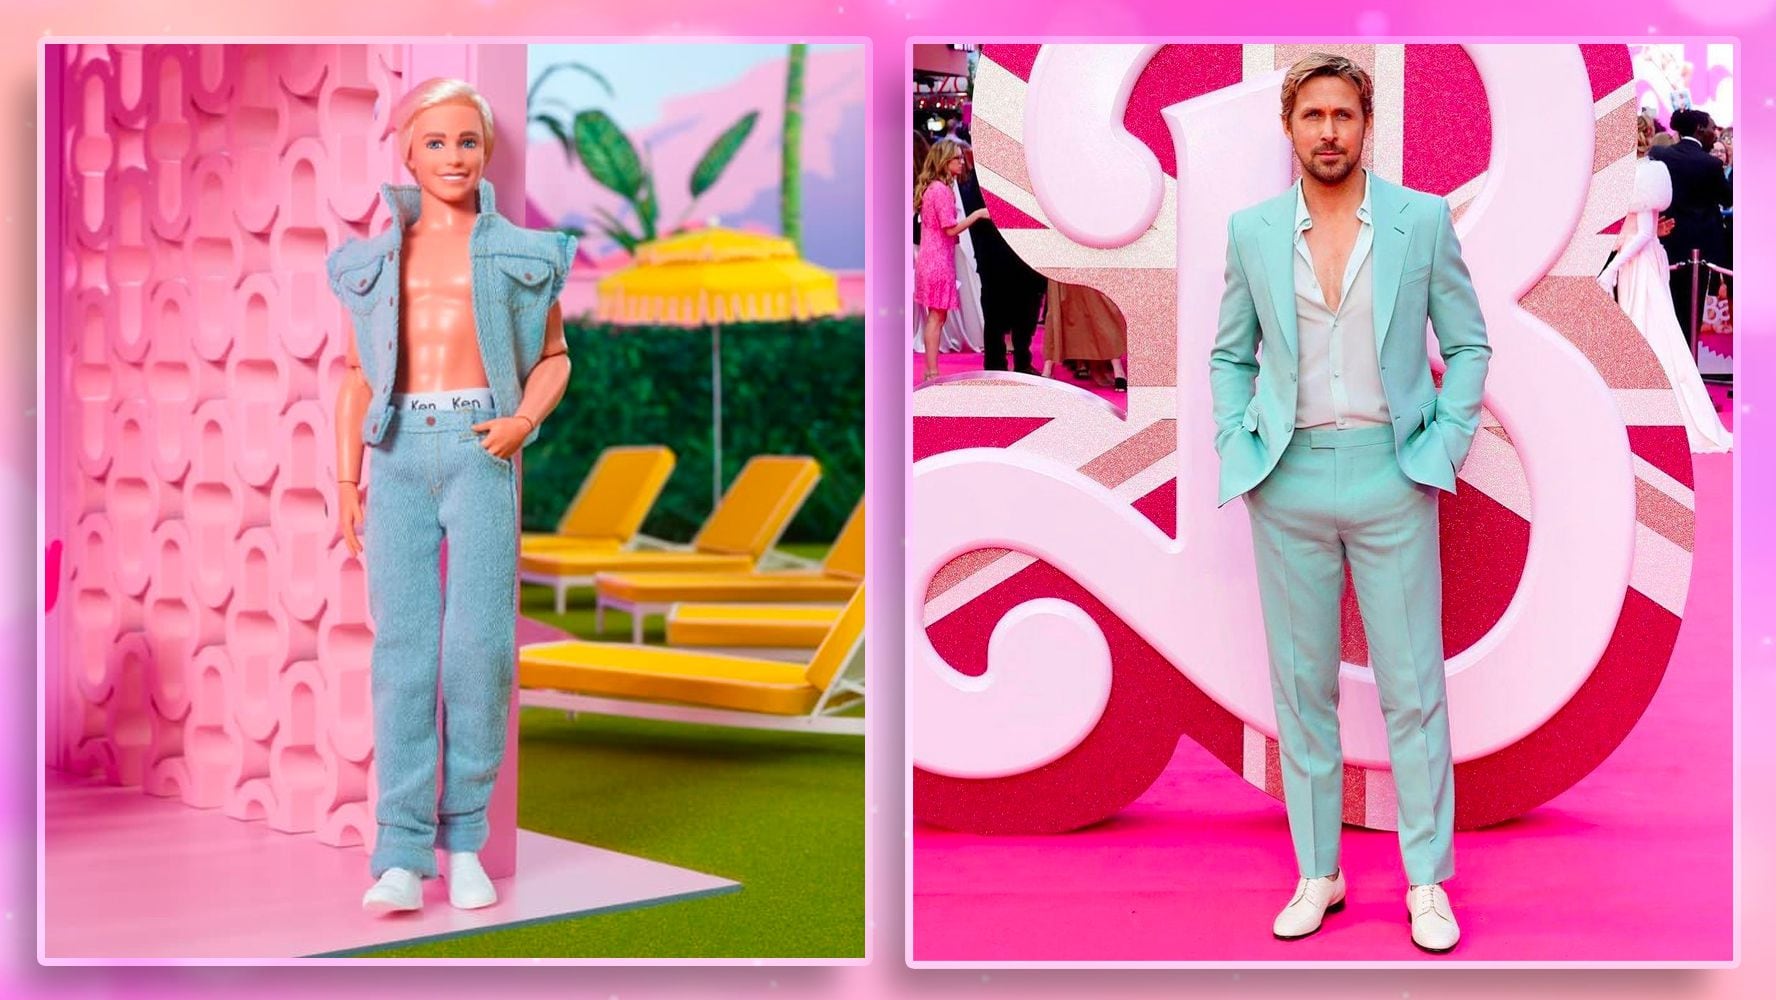 Ken es interpretado por Ryan Gosling en la nueva película de Barbie.